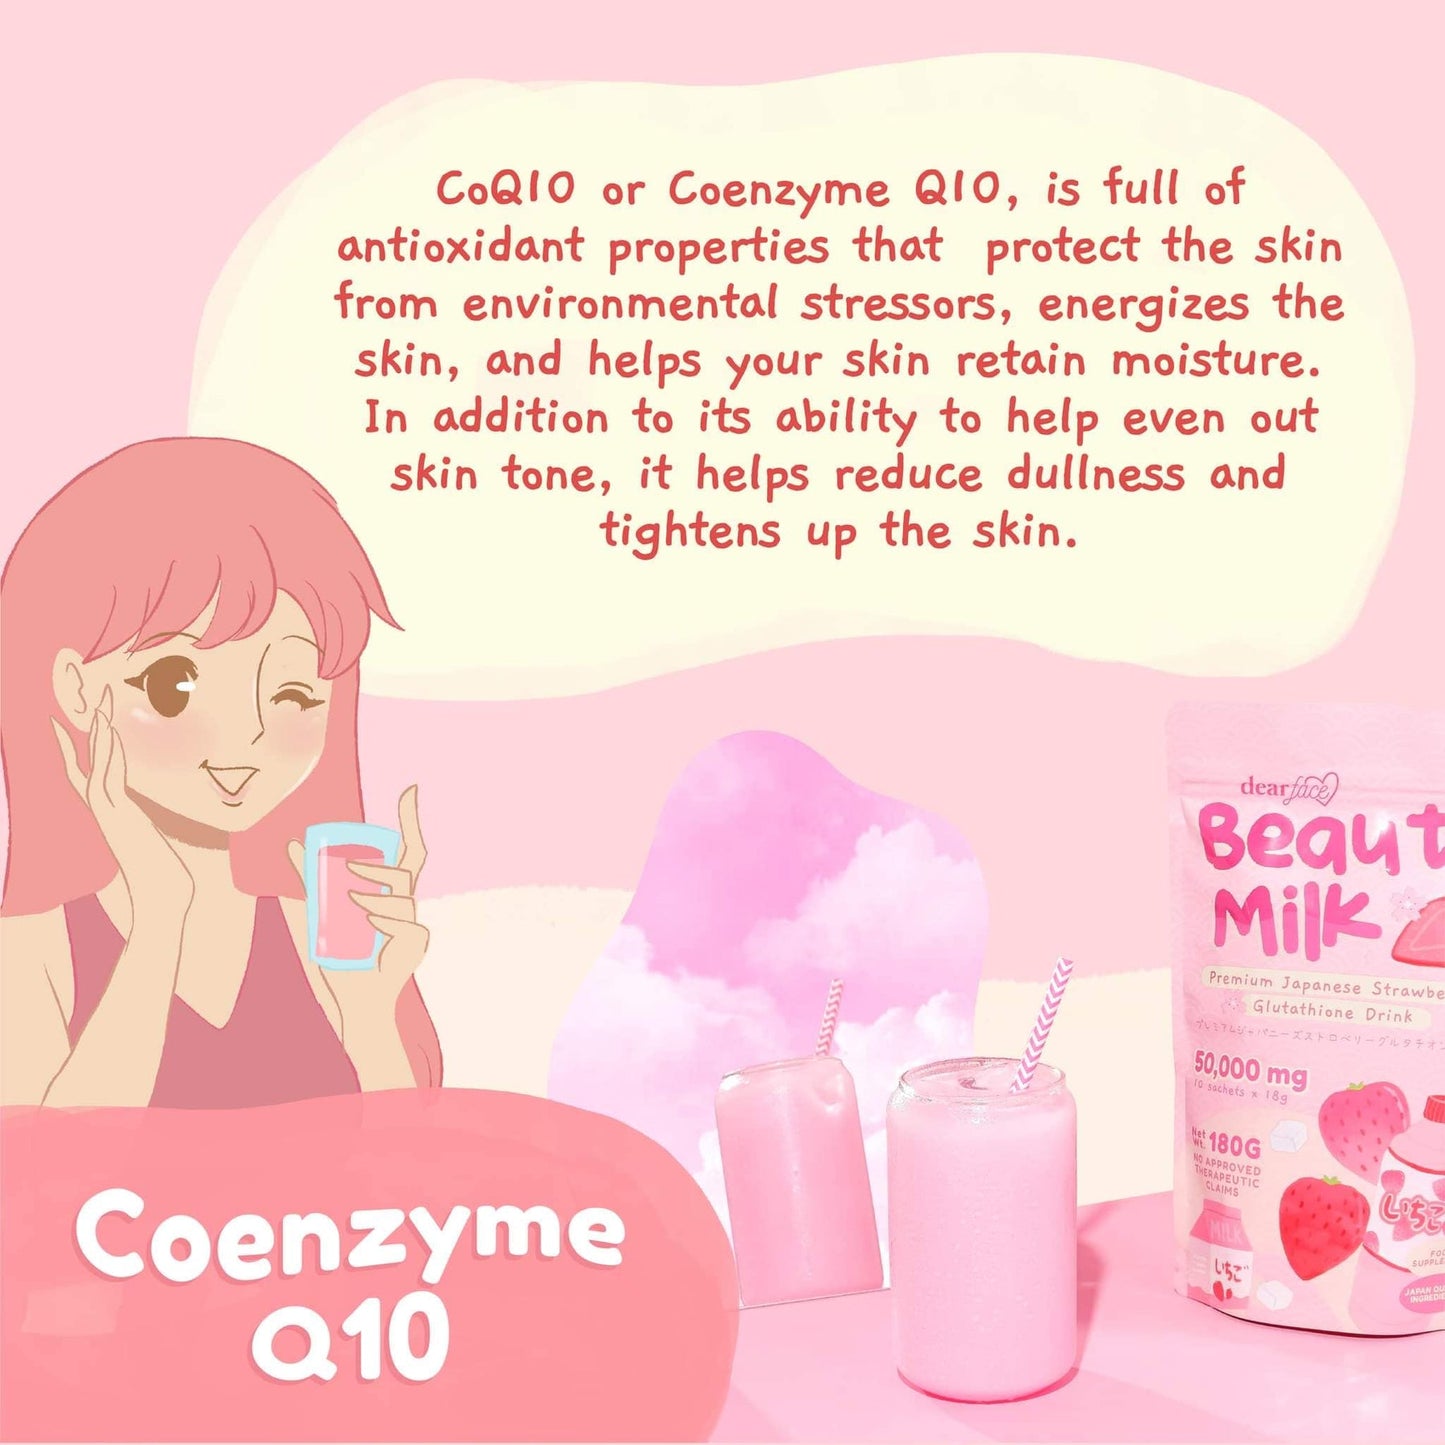 Dear Face Beauty Milk Ichigo Premium Japanese Strawberry Glutathione Drink